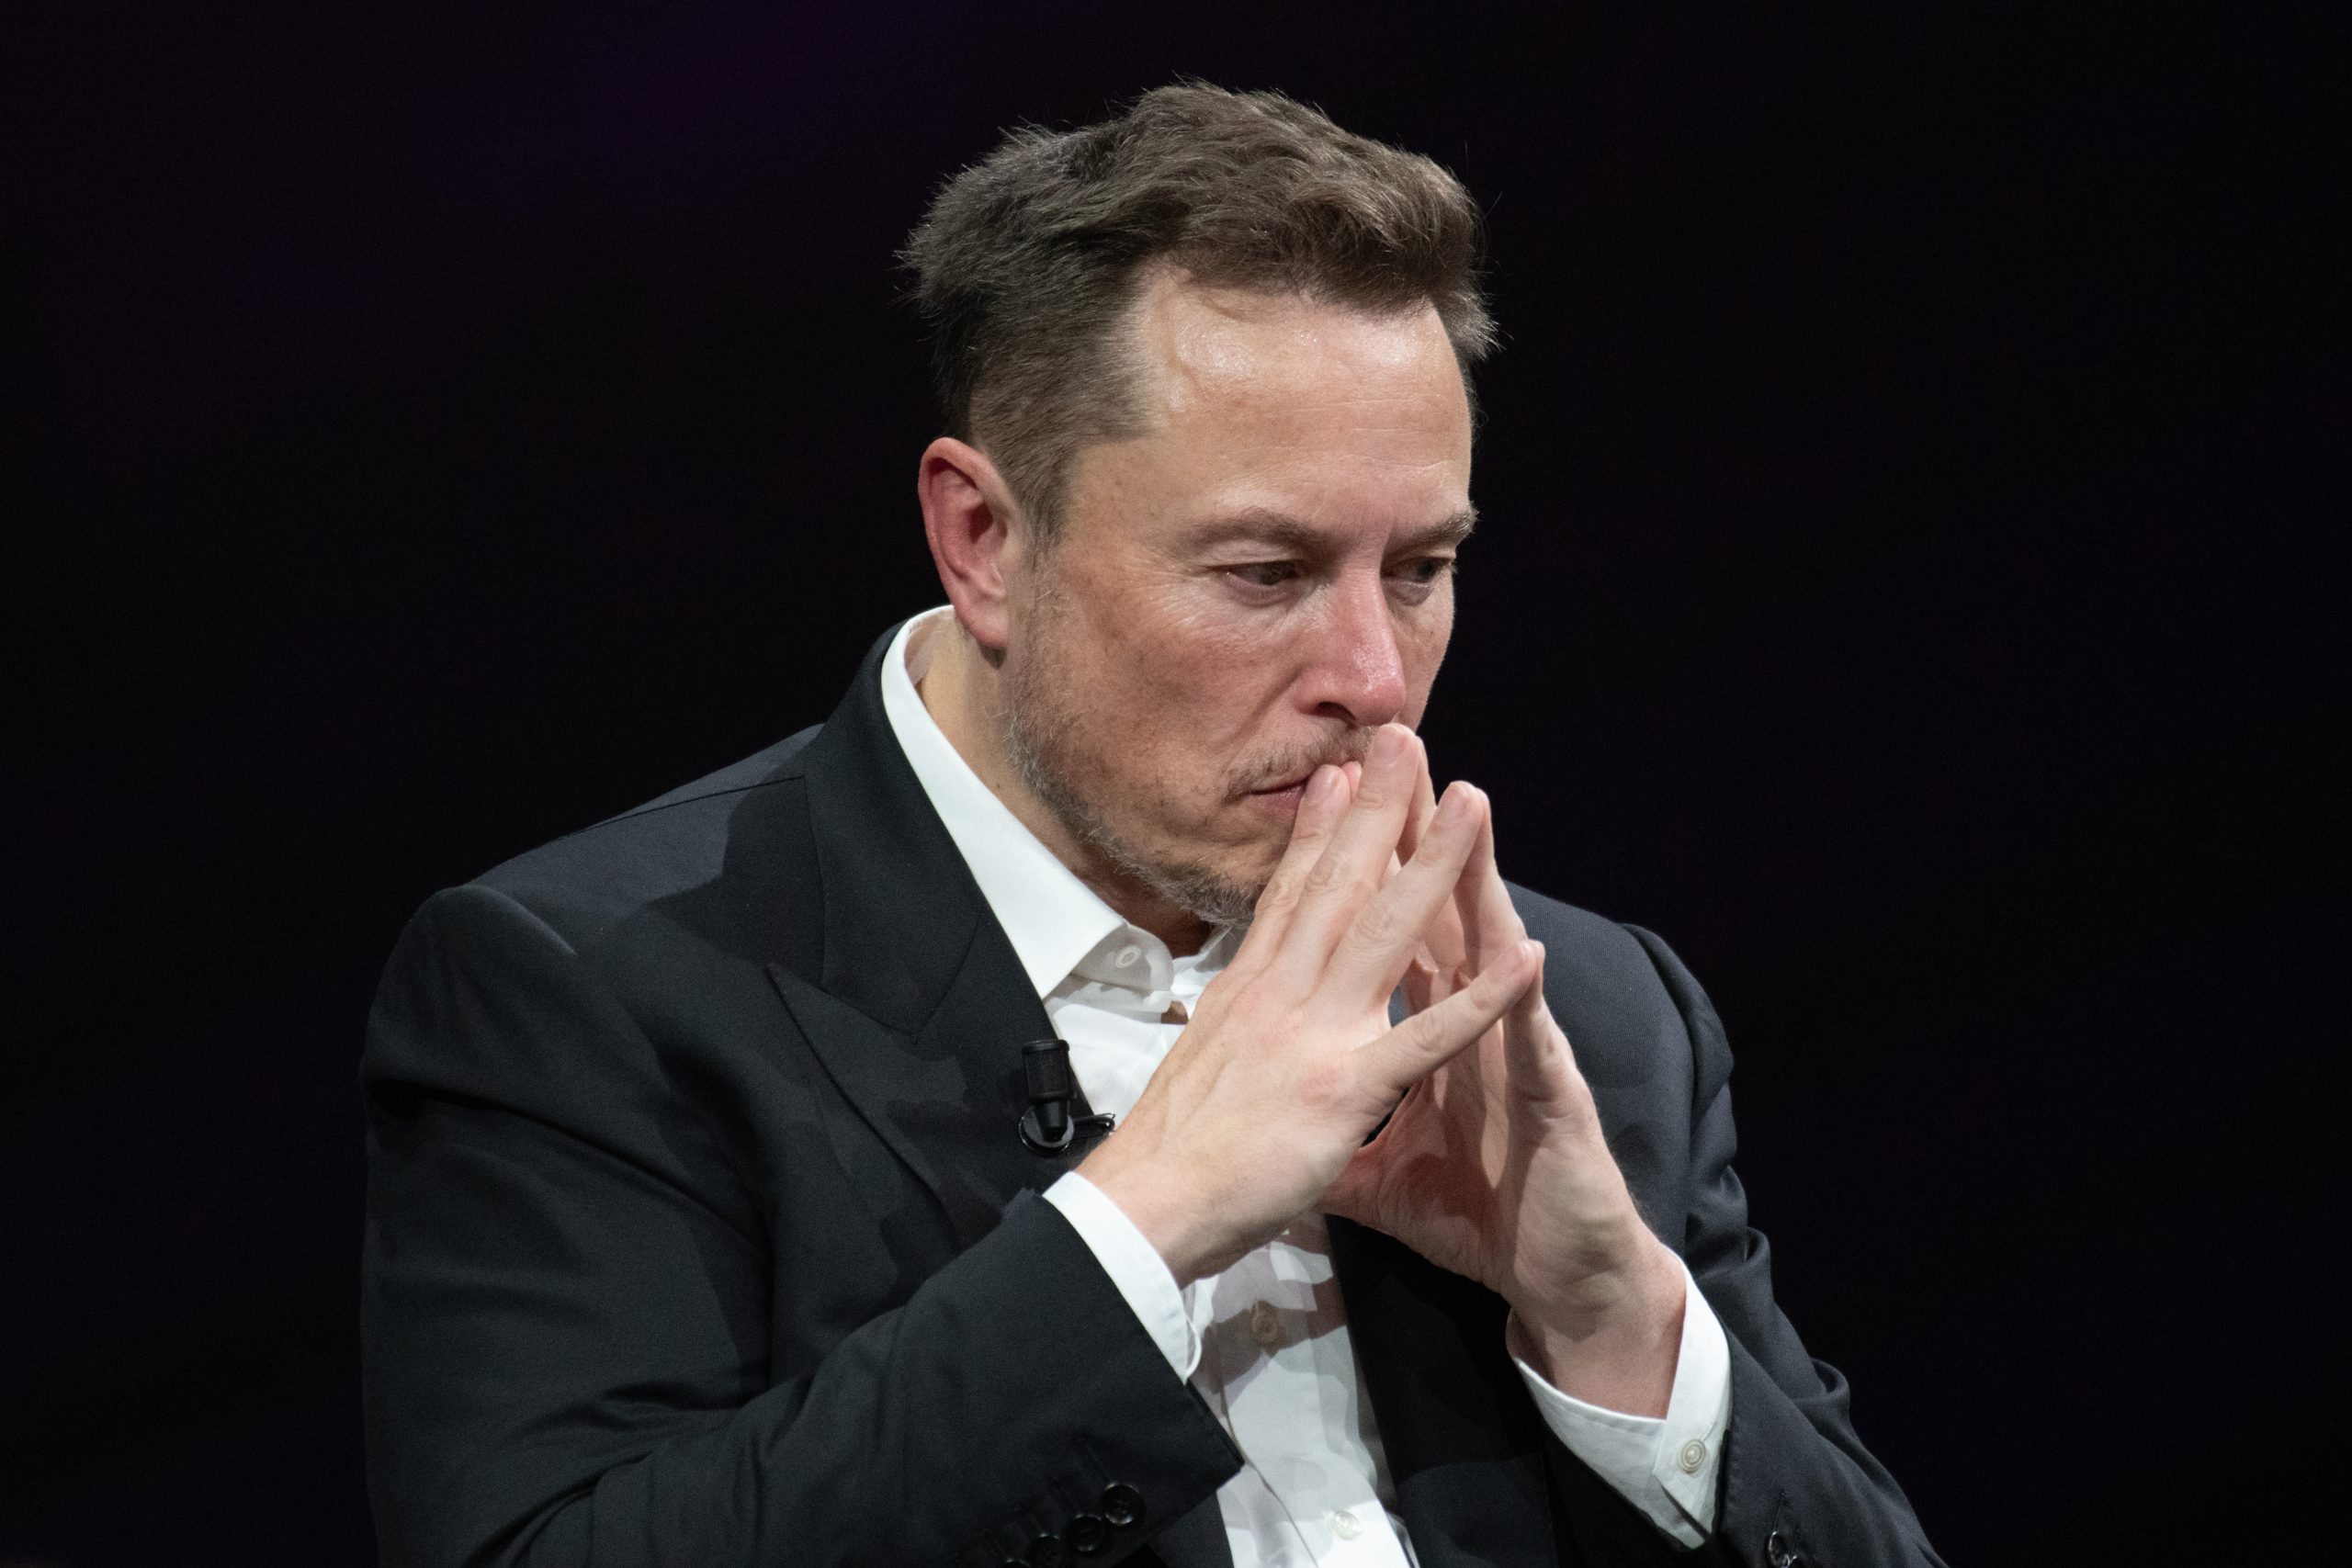 Imagem mostra o CEO da SpaceX, Elon Musk, com as mãos à frente do rosto e expressão facial pensativa